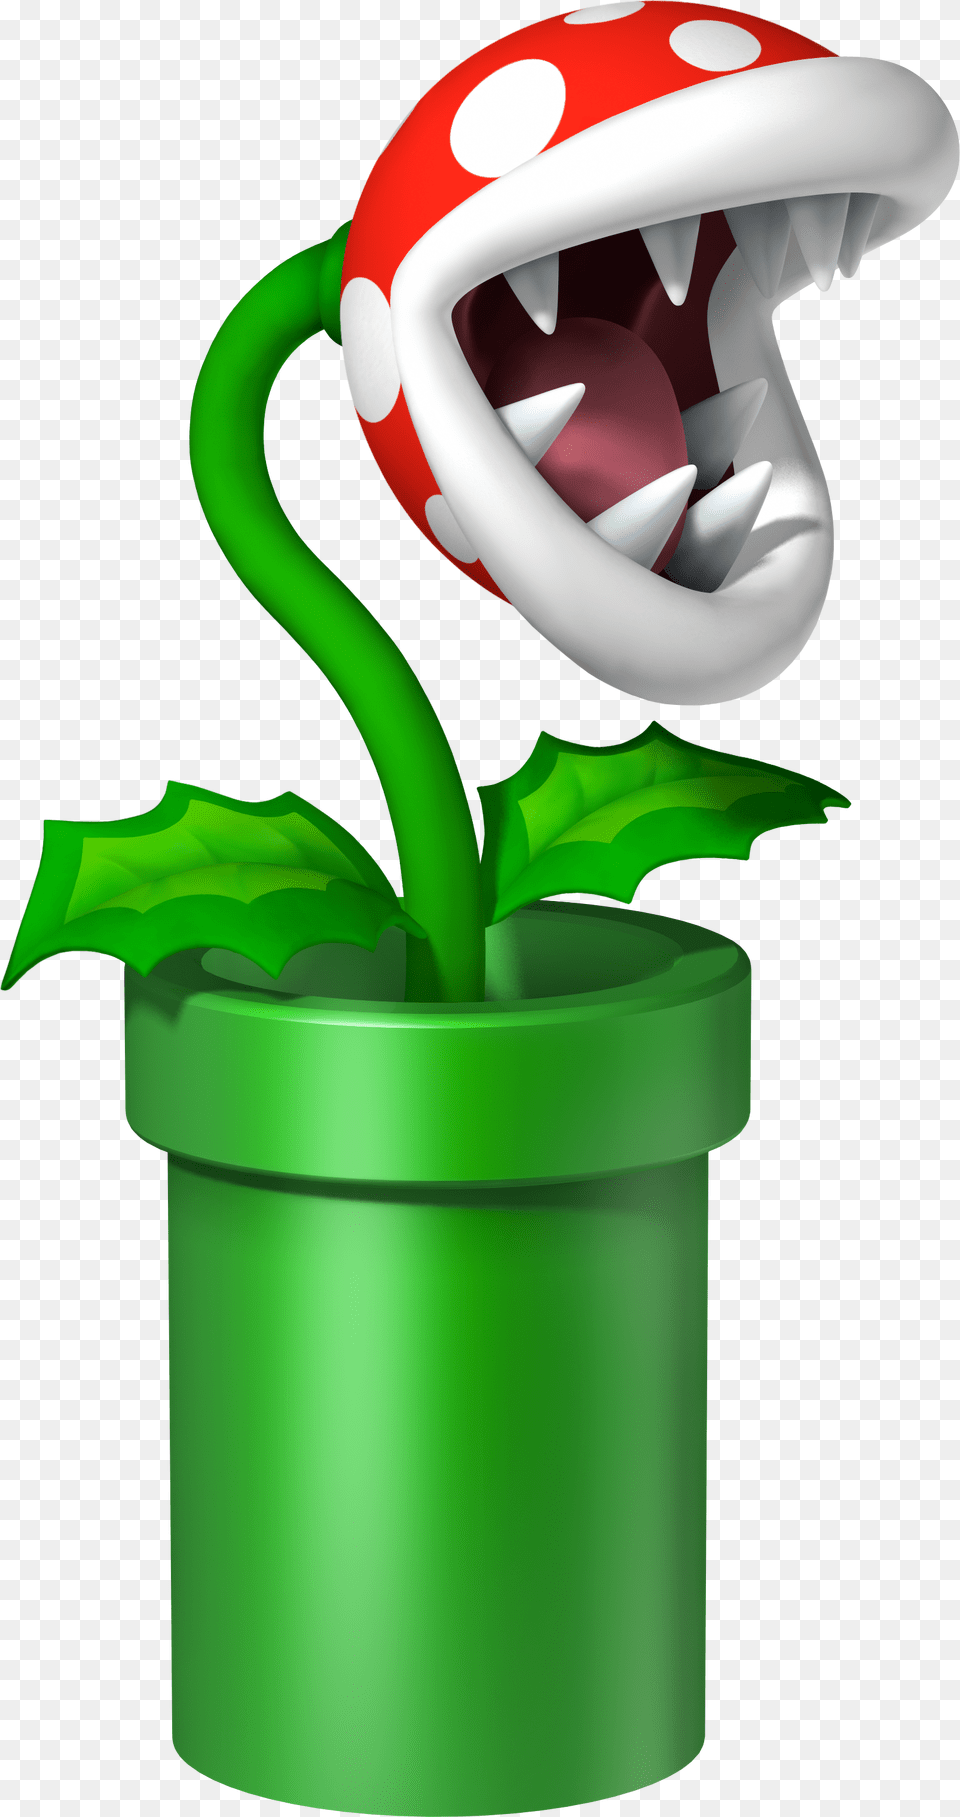 Par Lady Doigt De Sur Mario Timeo Super, Potted Plant, Green, Plant, Jar Free Png